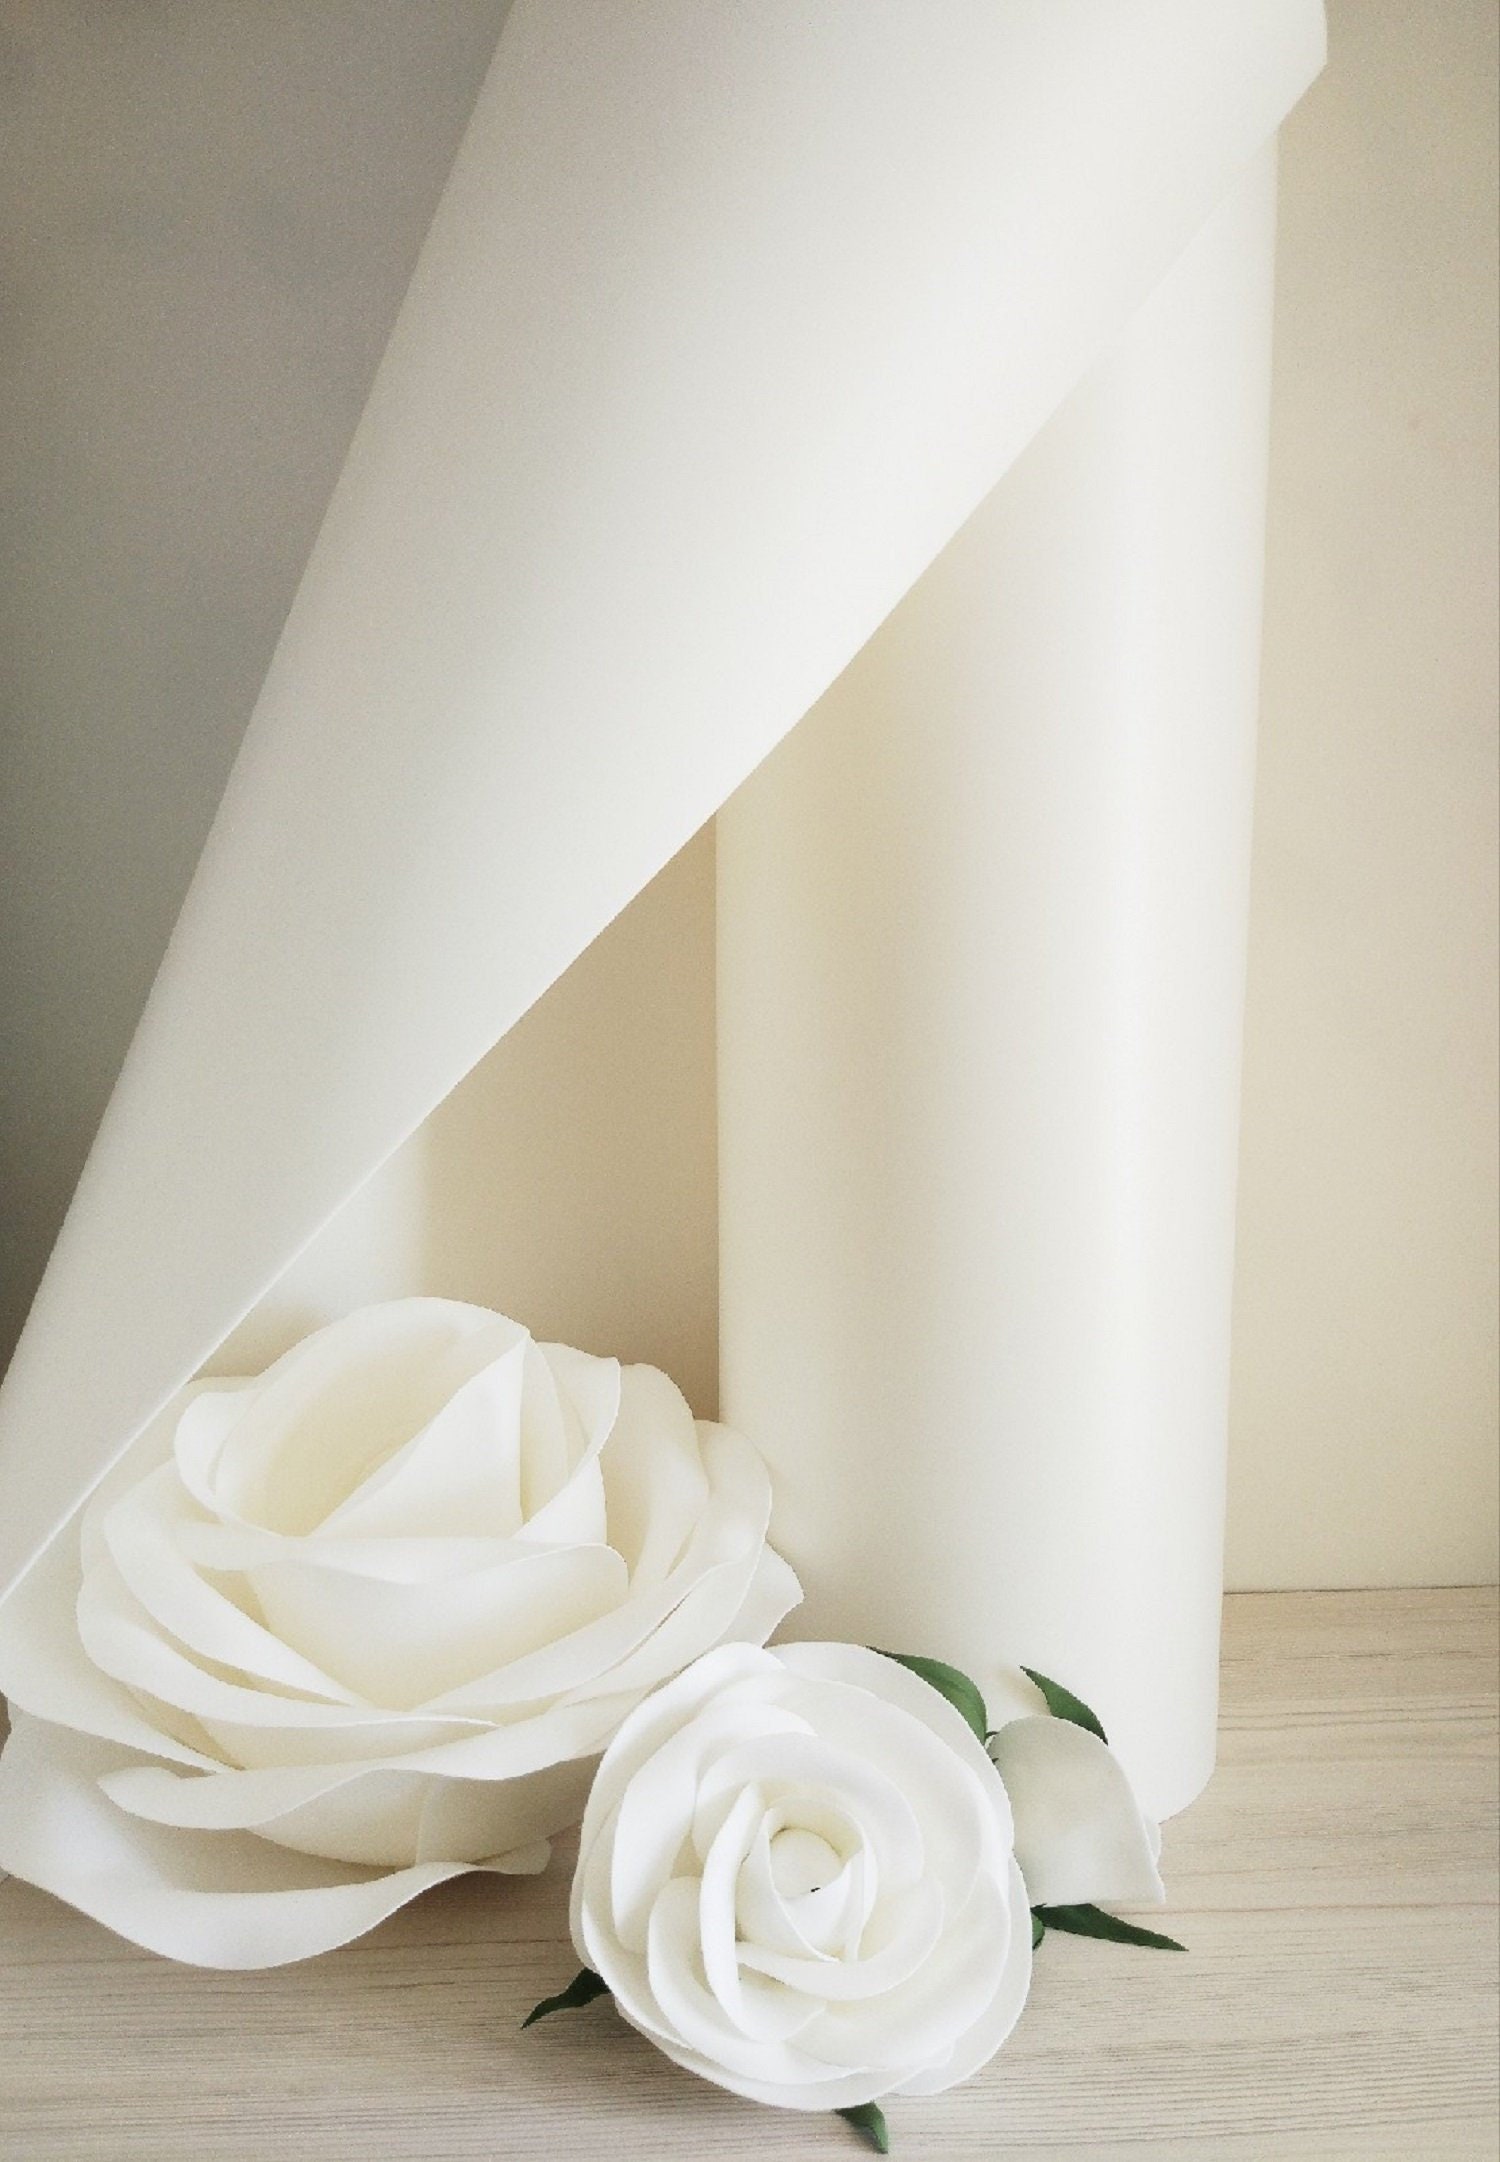 Isolon white roll 100m2 for Giant foam Rose Standing Izolon | Etsy